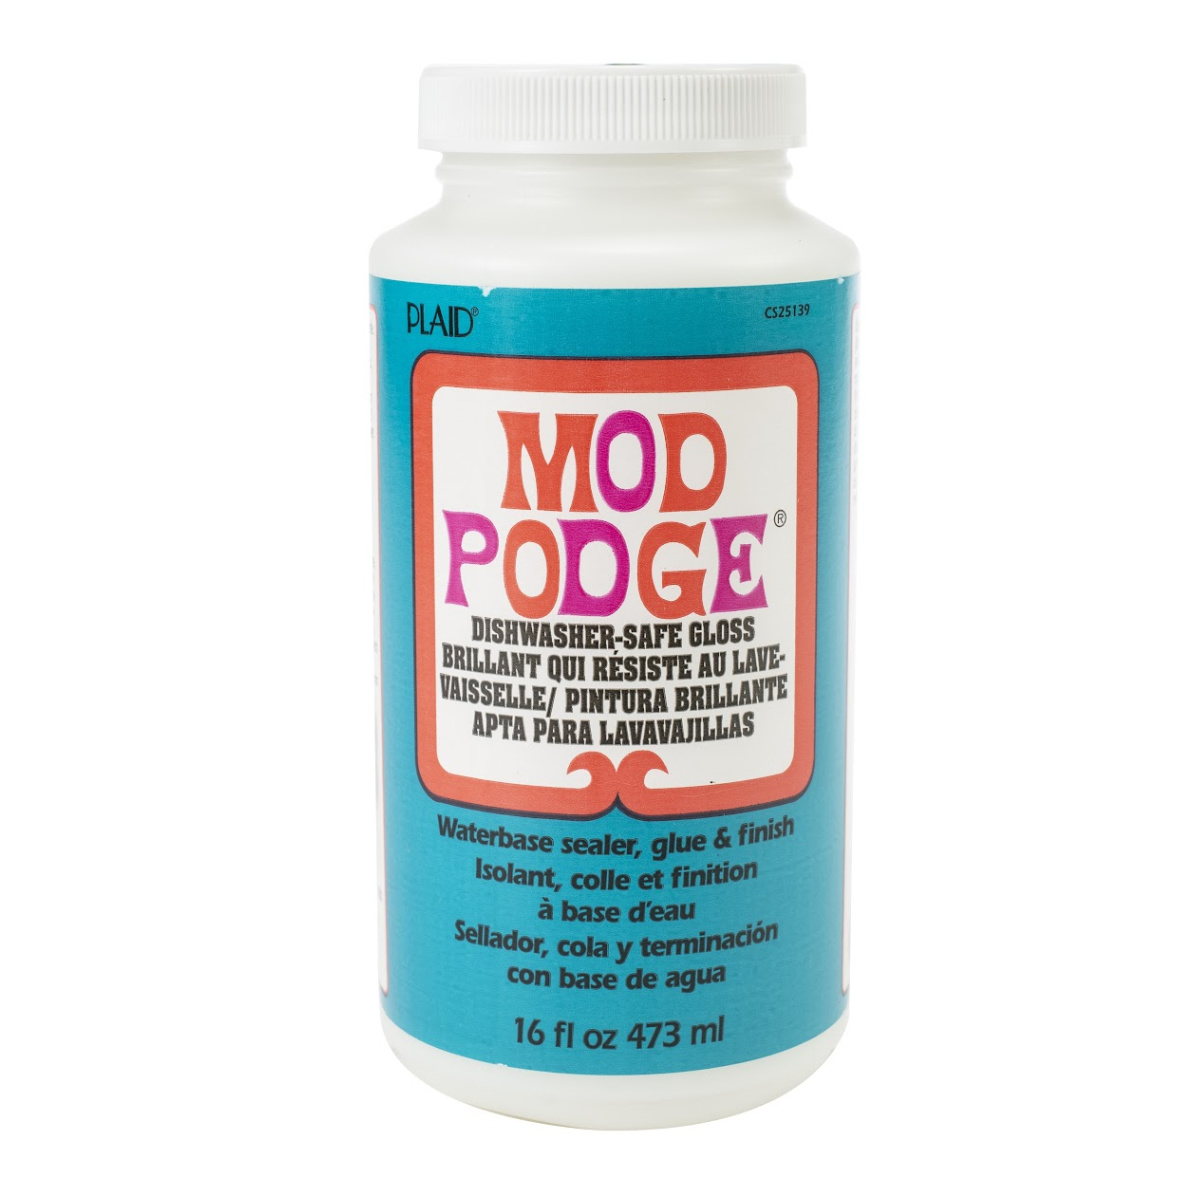 Mod Podge Sealer Dishwasher Safe Gloss, White - 8 oz jar